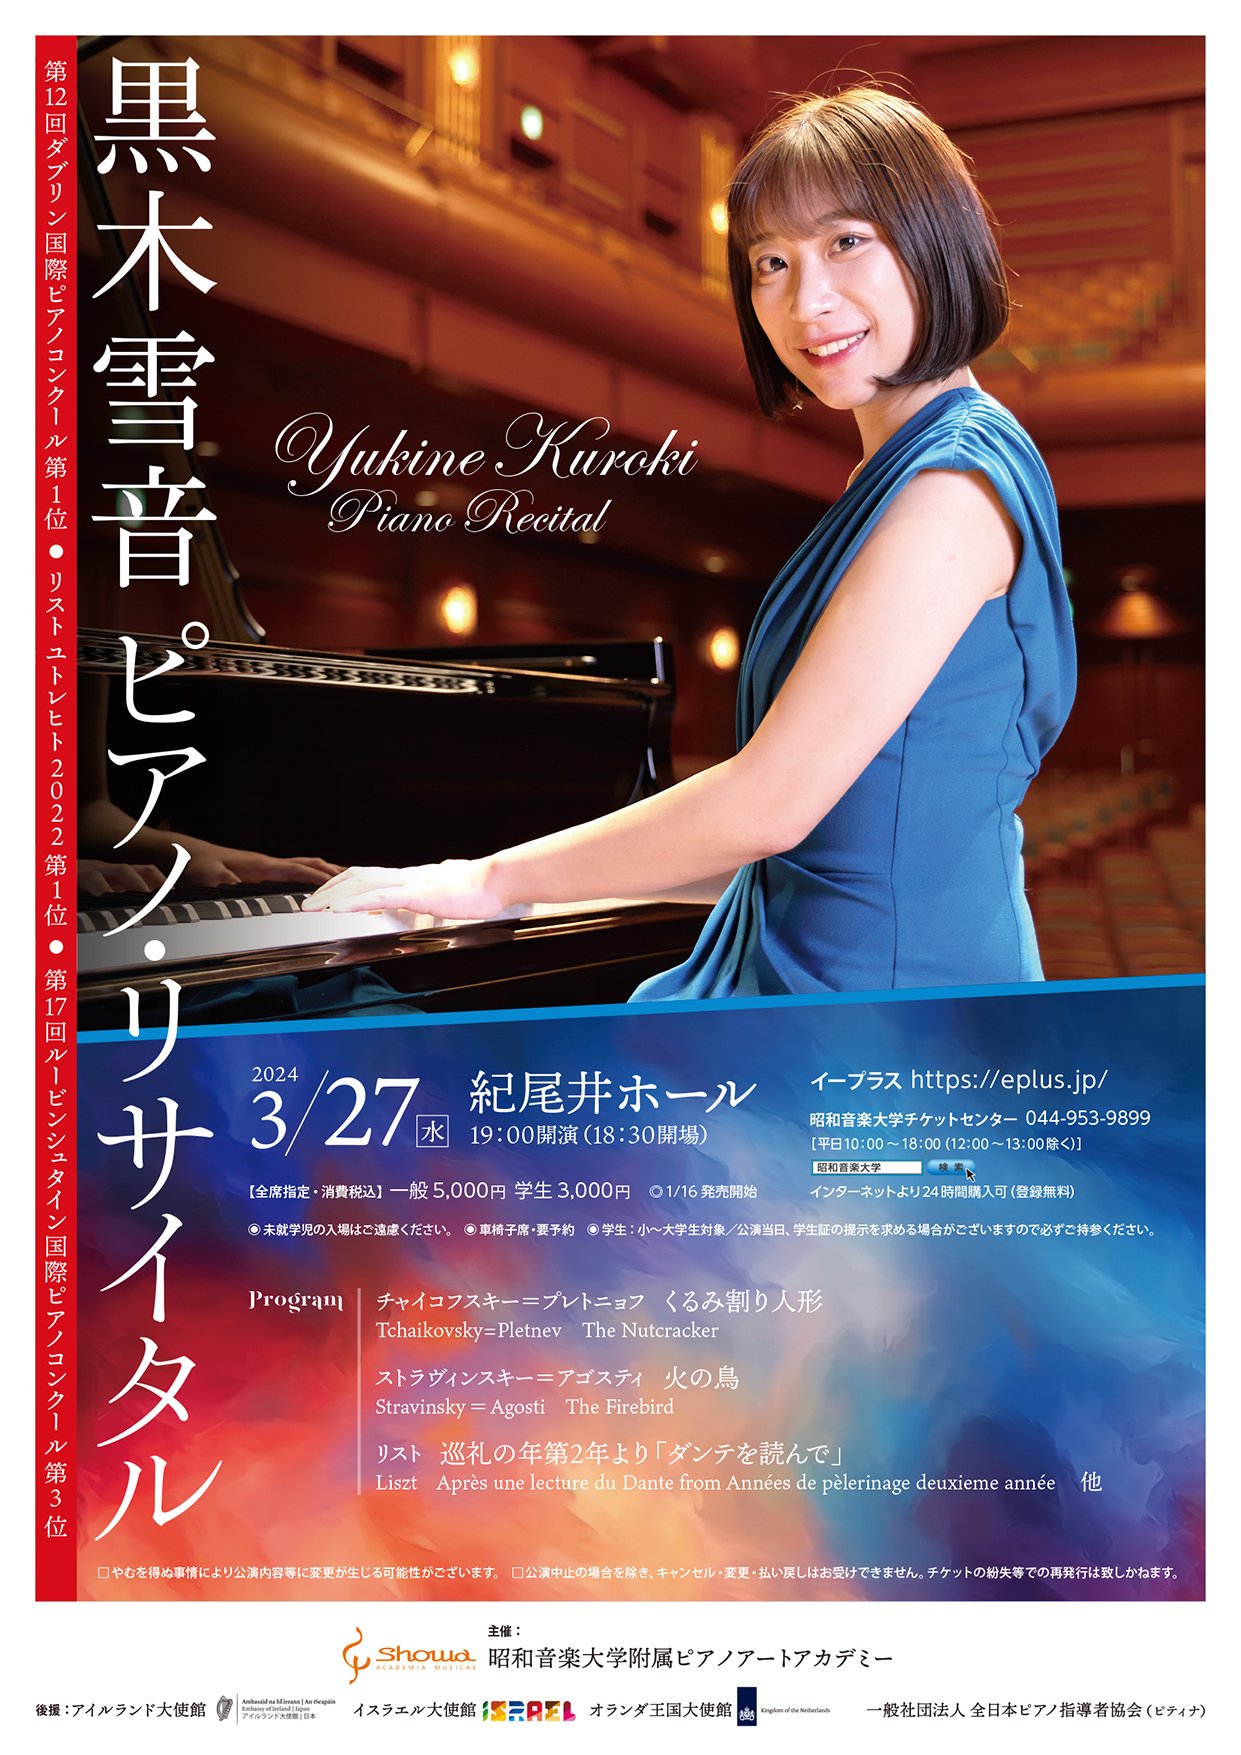 YukineKuroki recital 2403_omote.jpg